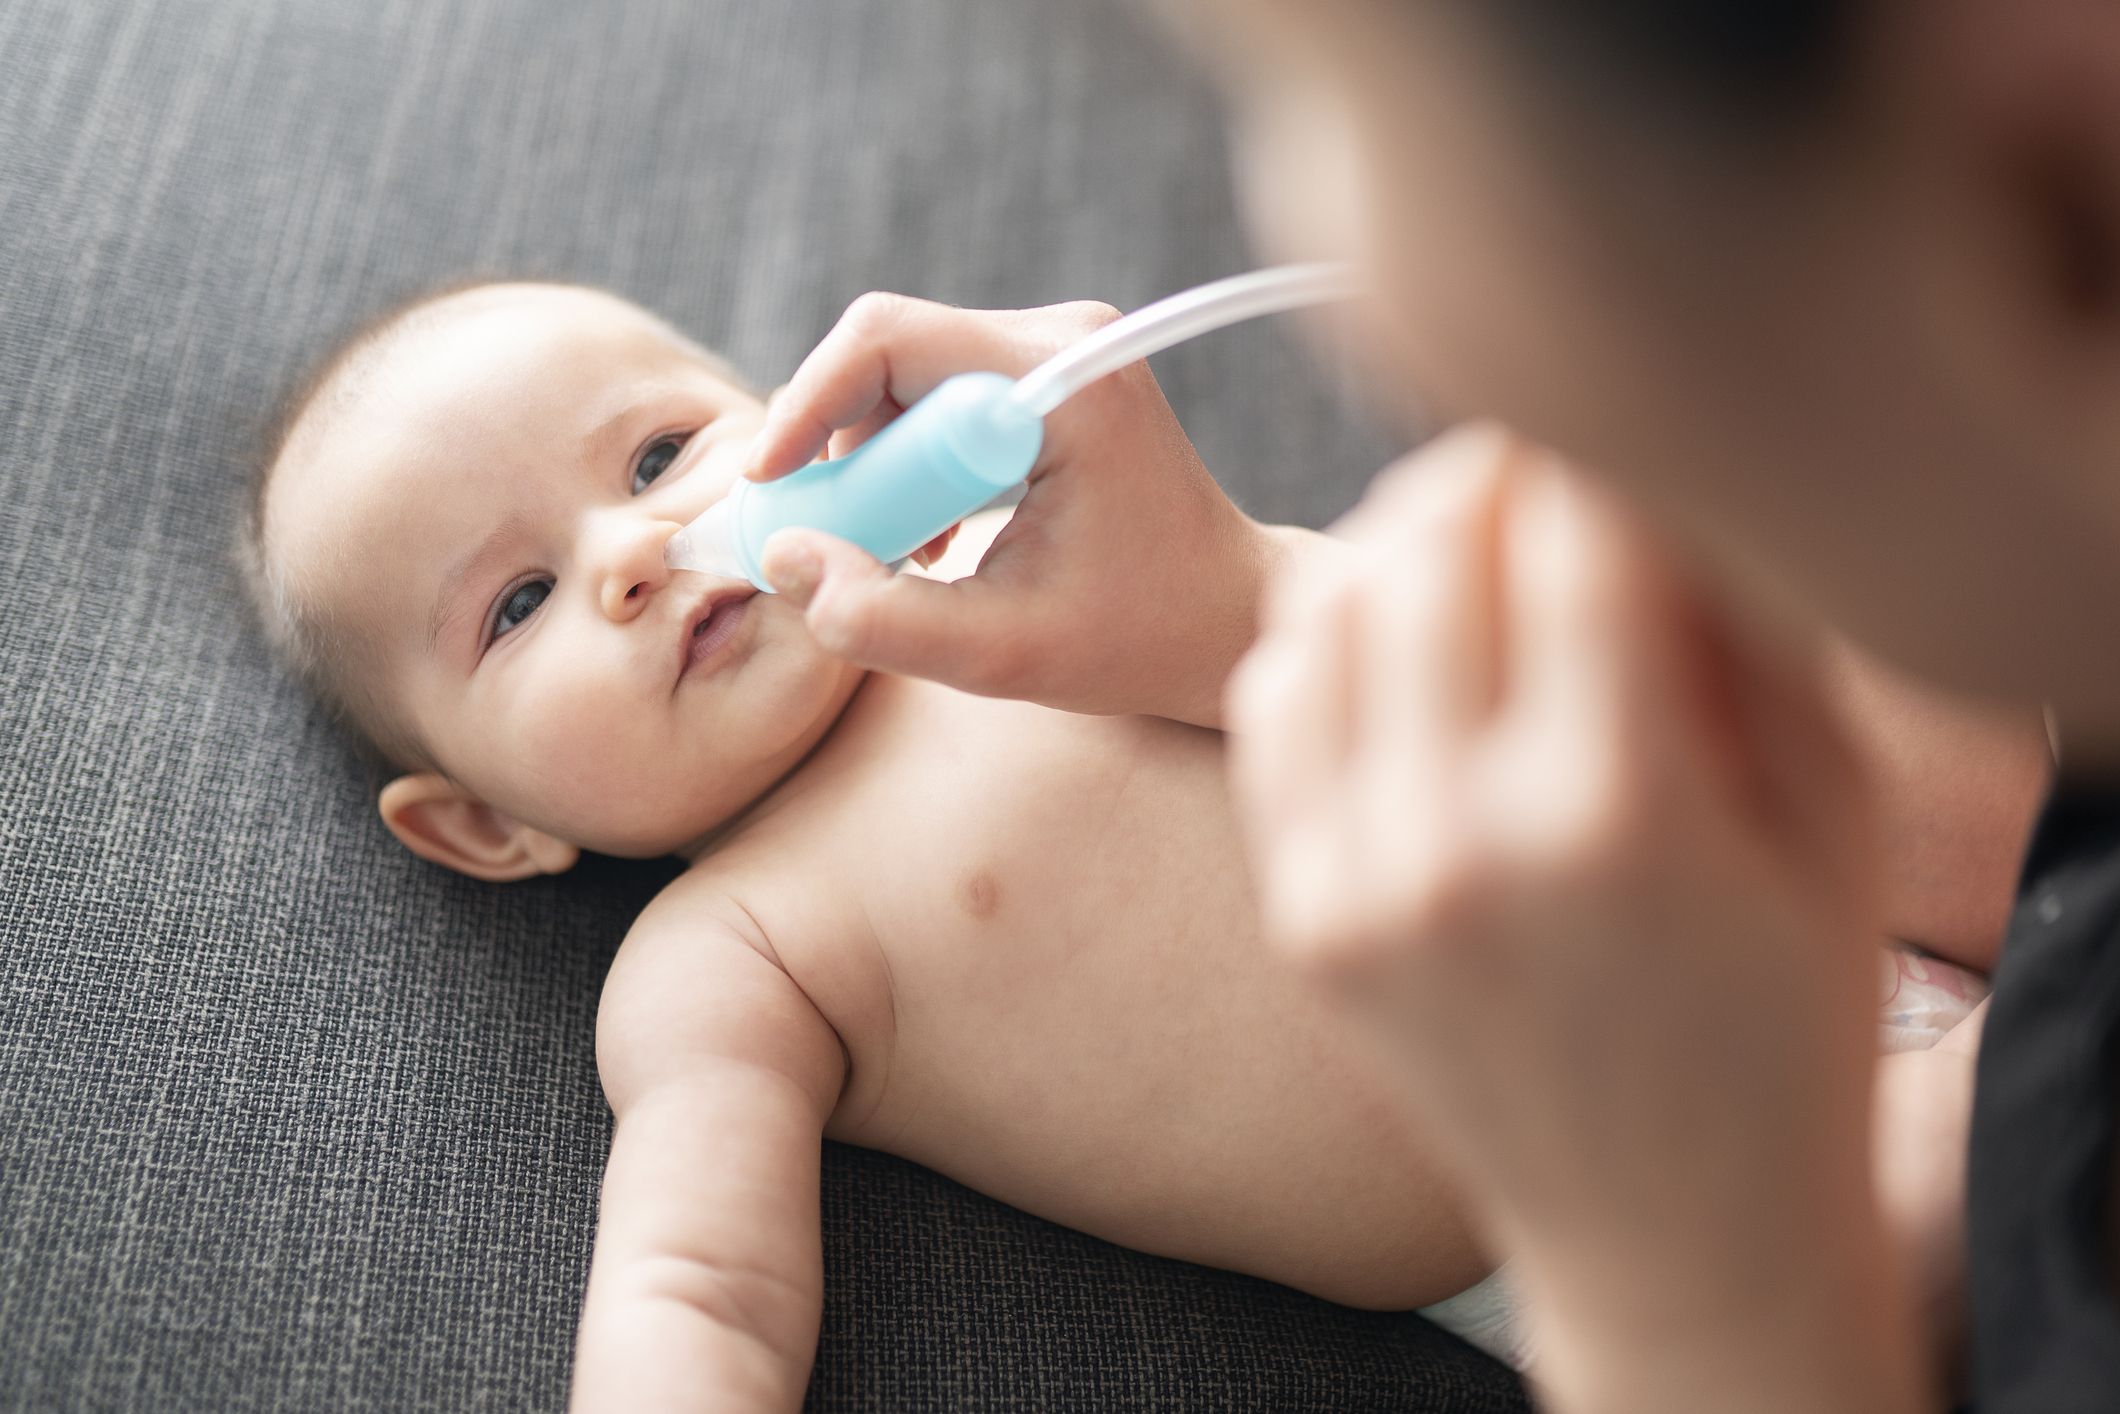 Limpiar los oídos del bebé: cómo debes hacerlo para evitar riesgos